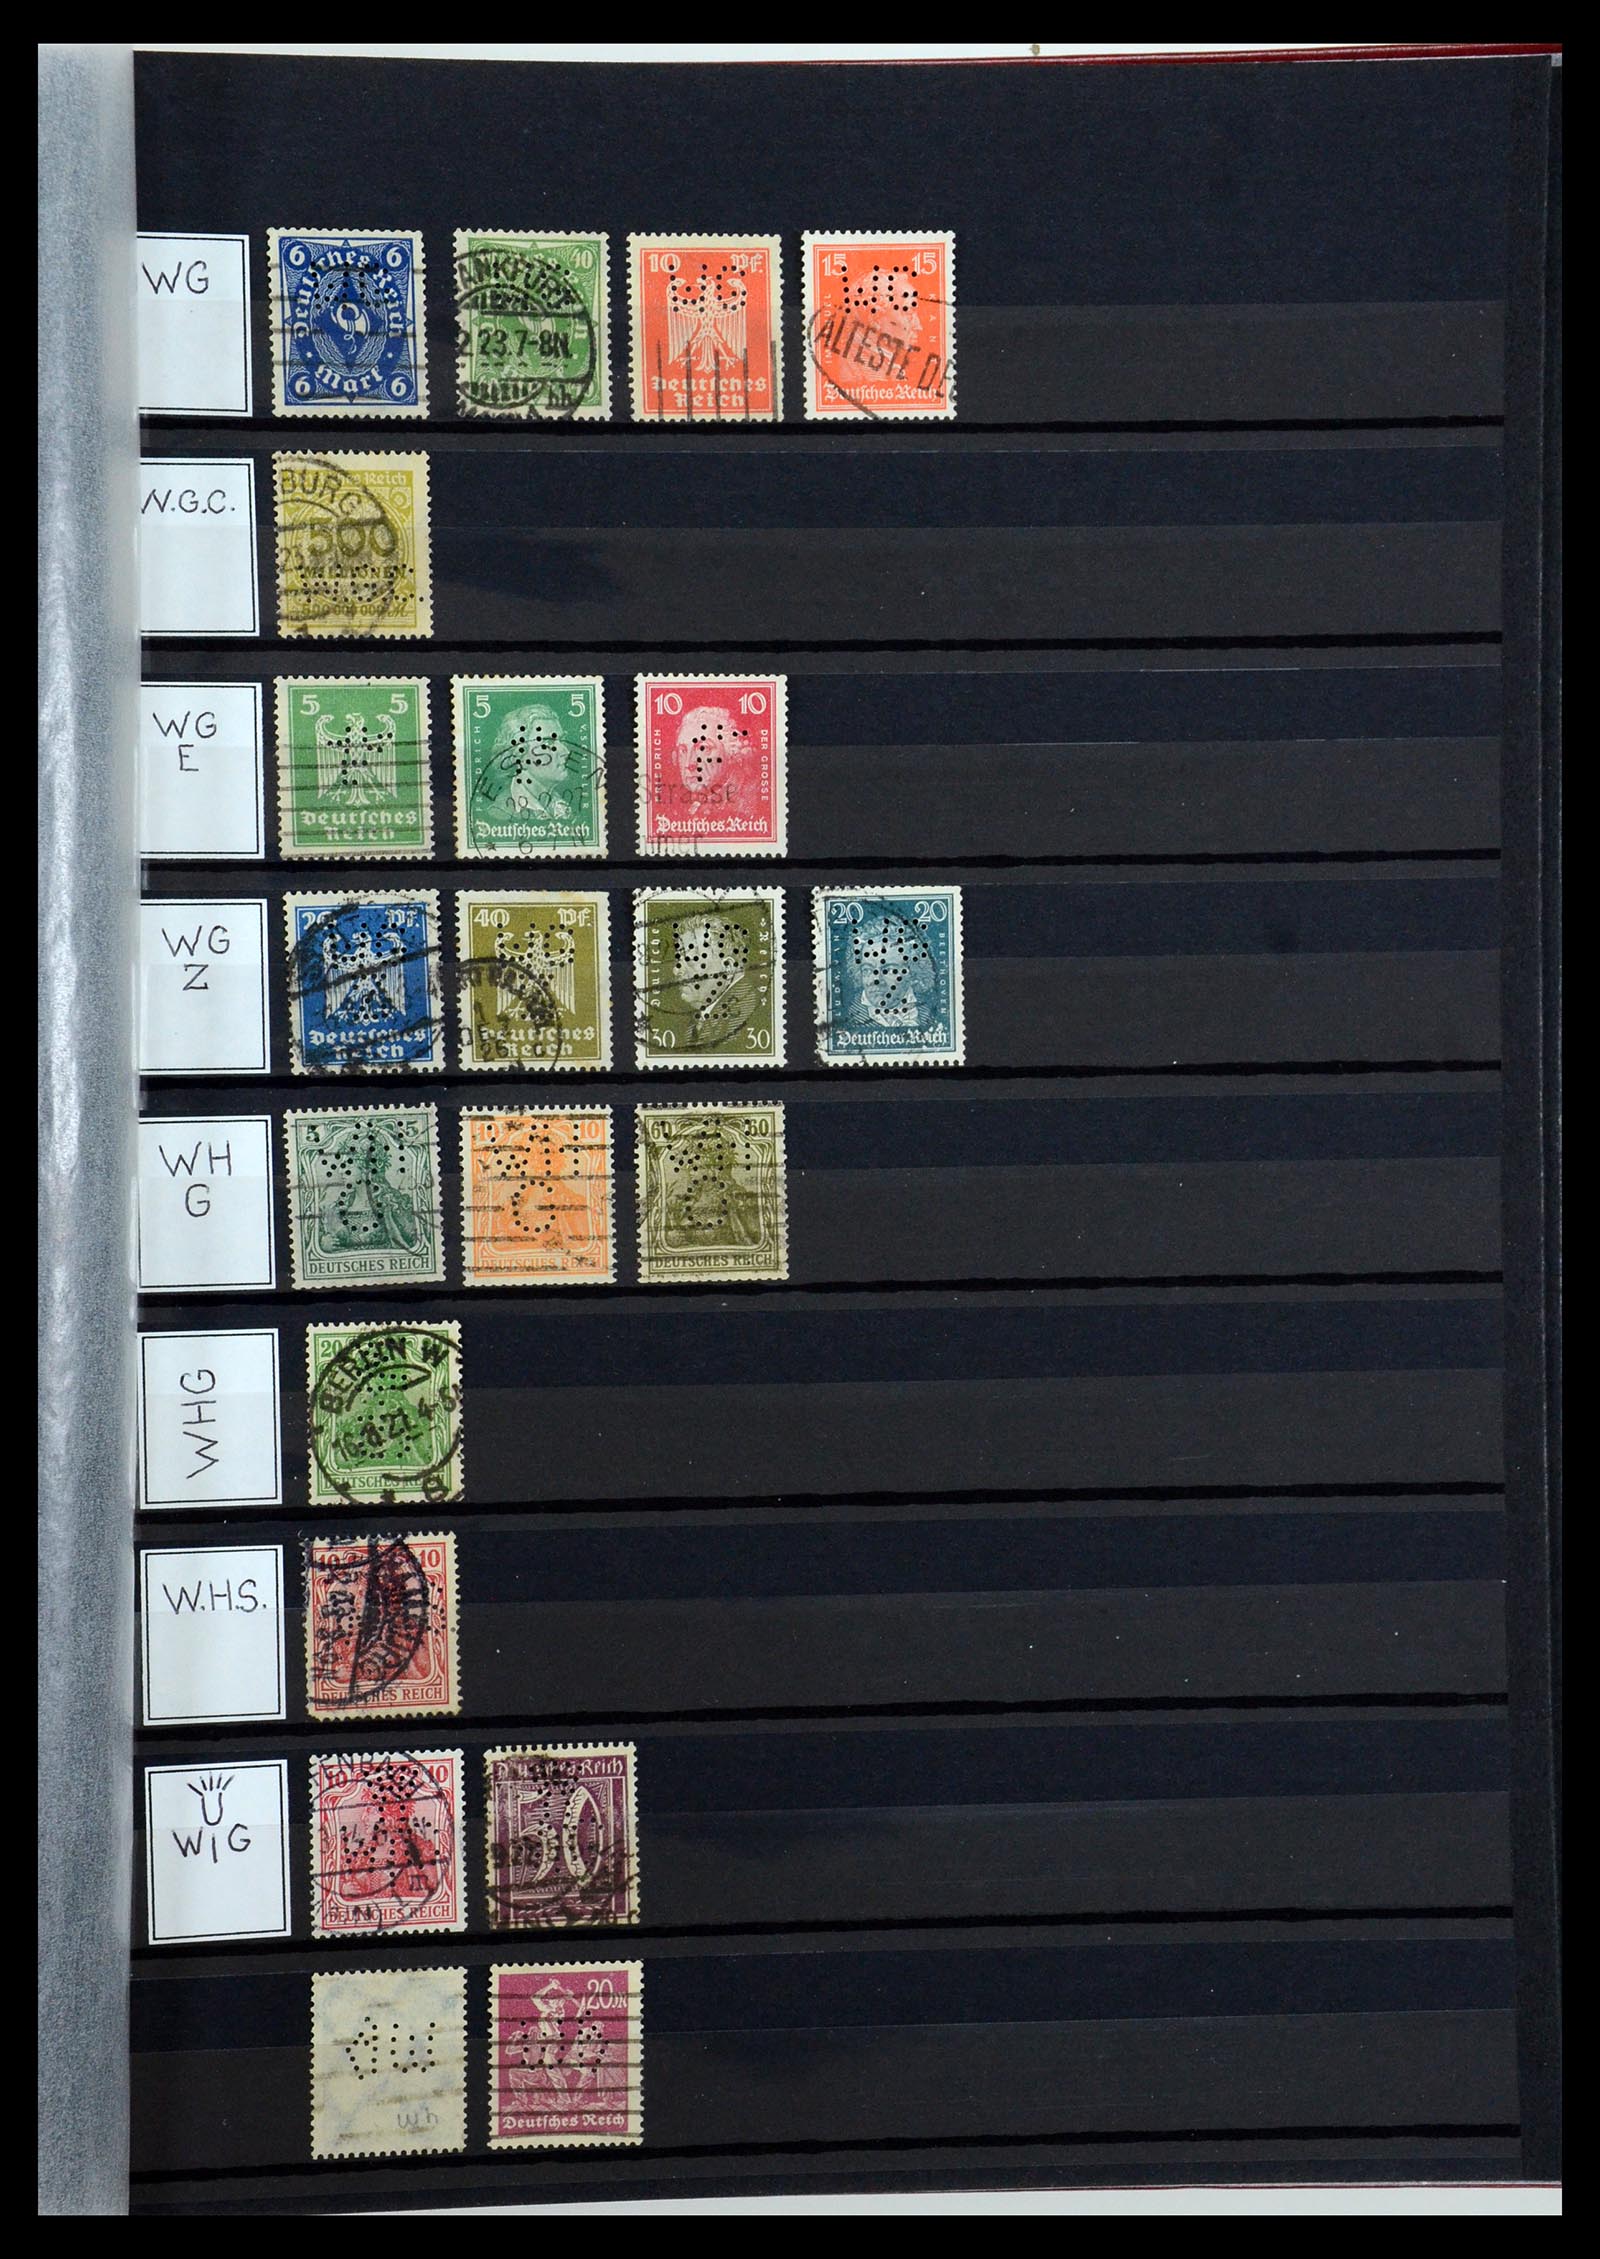 36405 338 - Stamp collection 36405 German Reich perfins 1880-1945.